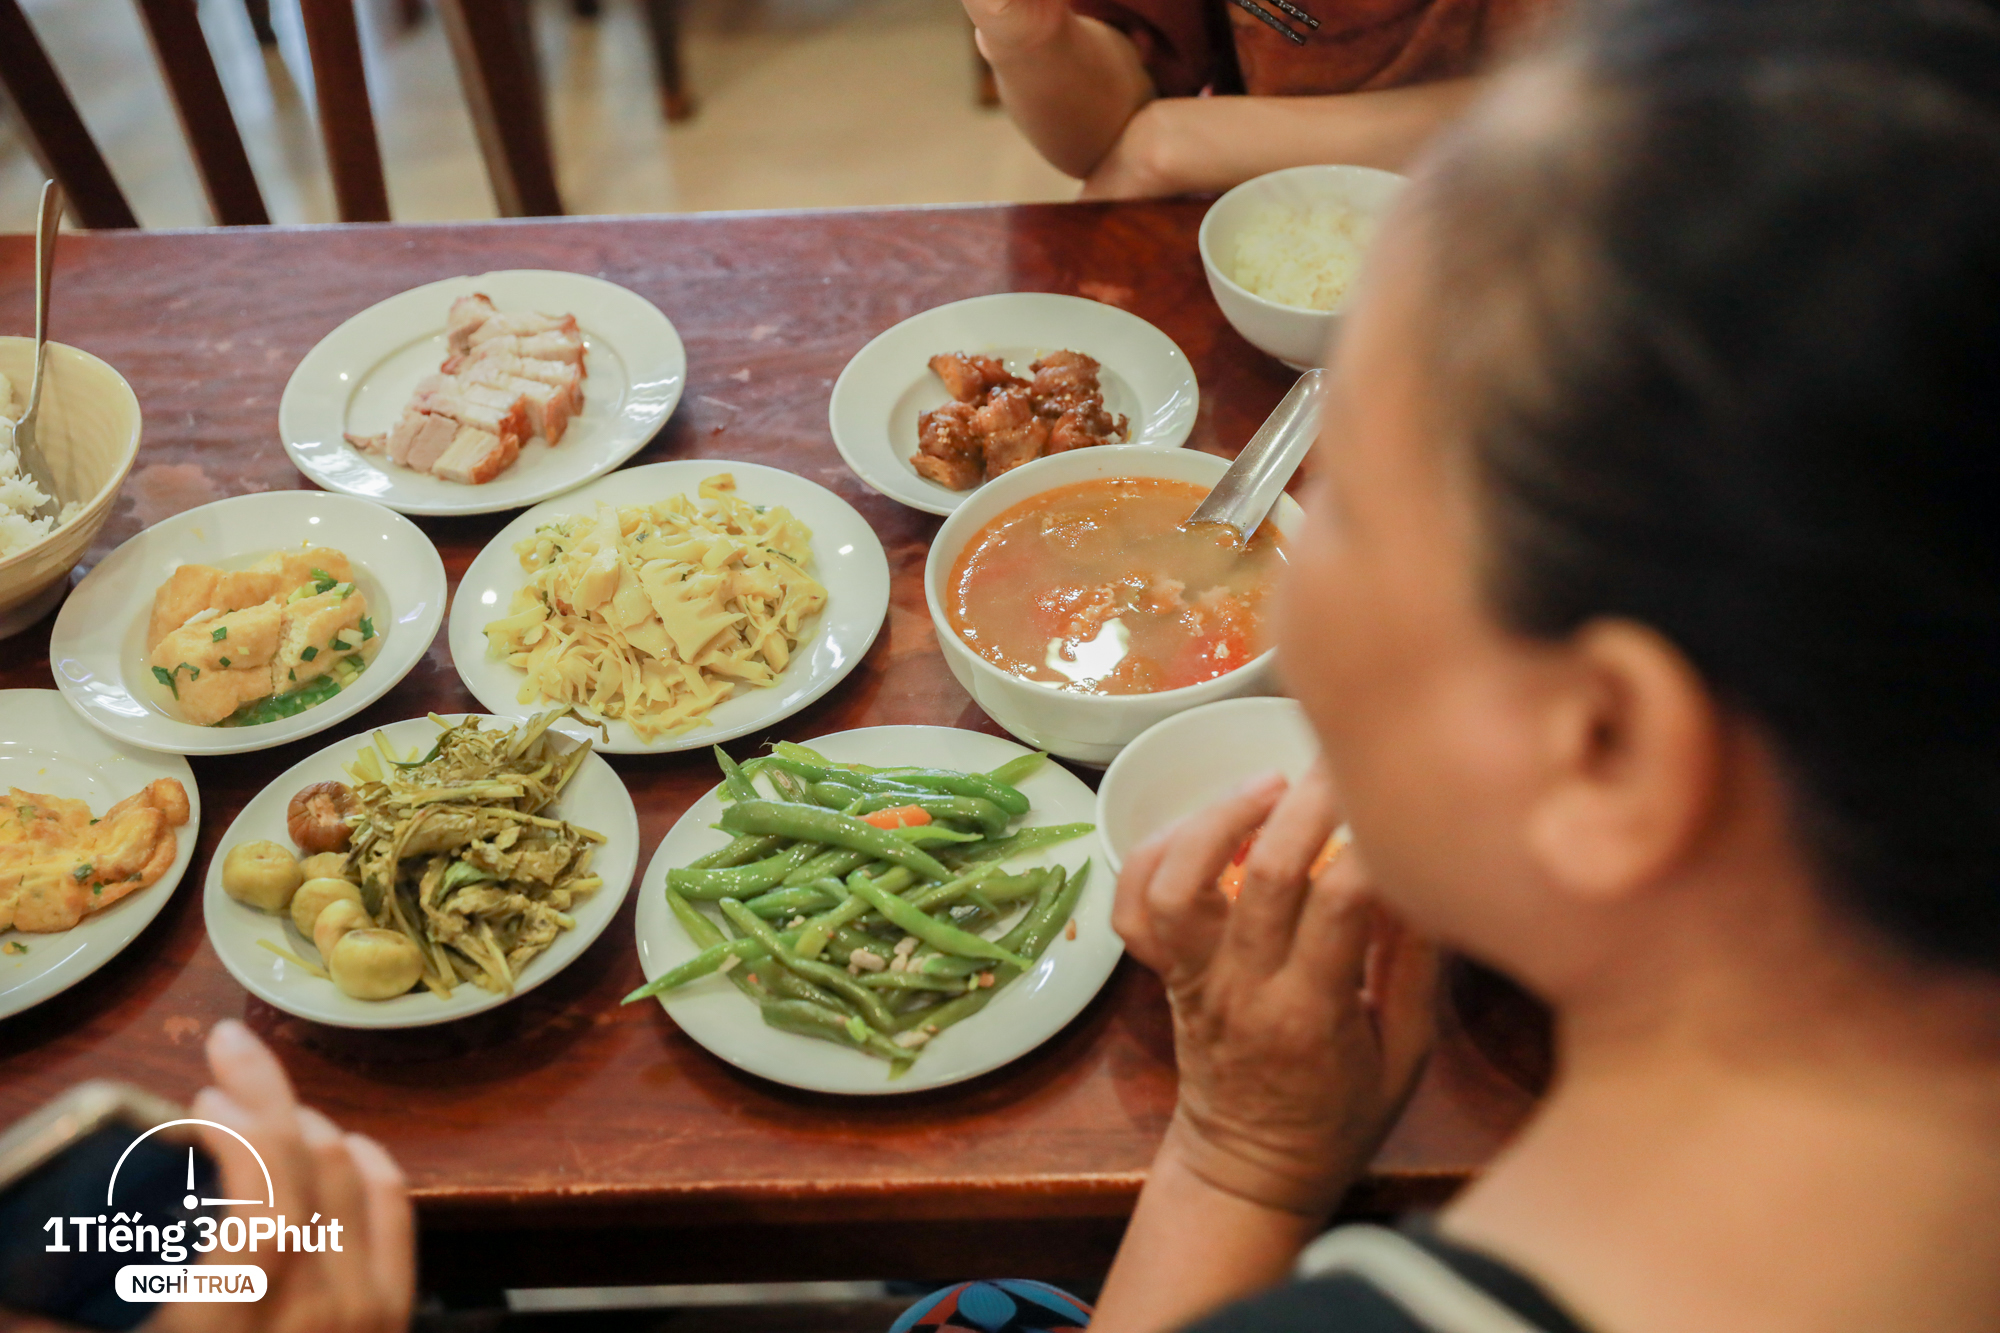 Hàng cơm trưa ở phố cổ Hà Nội toàn phục vụ “dân công sở hạng sang”, đến người nước ngoài cũng biết và tần suất ăn chung cùng người nổi tiếng rất cao - Ảnh 11.